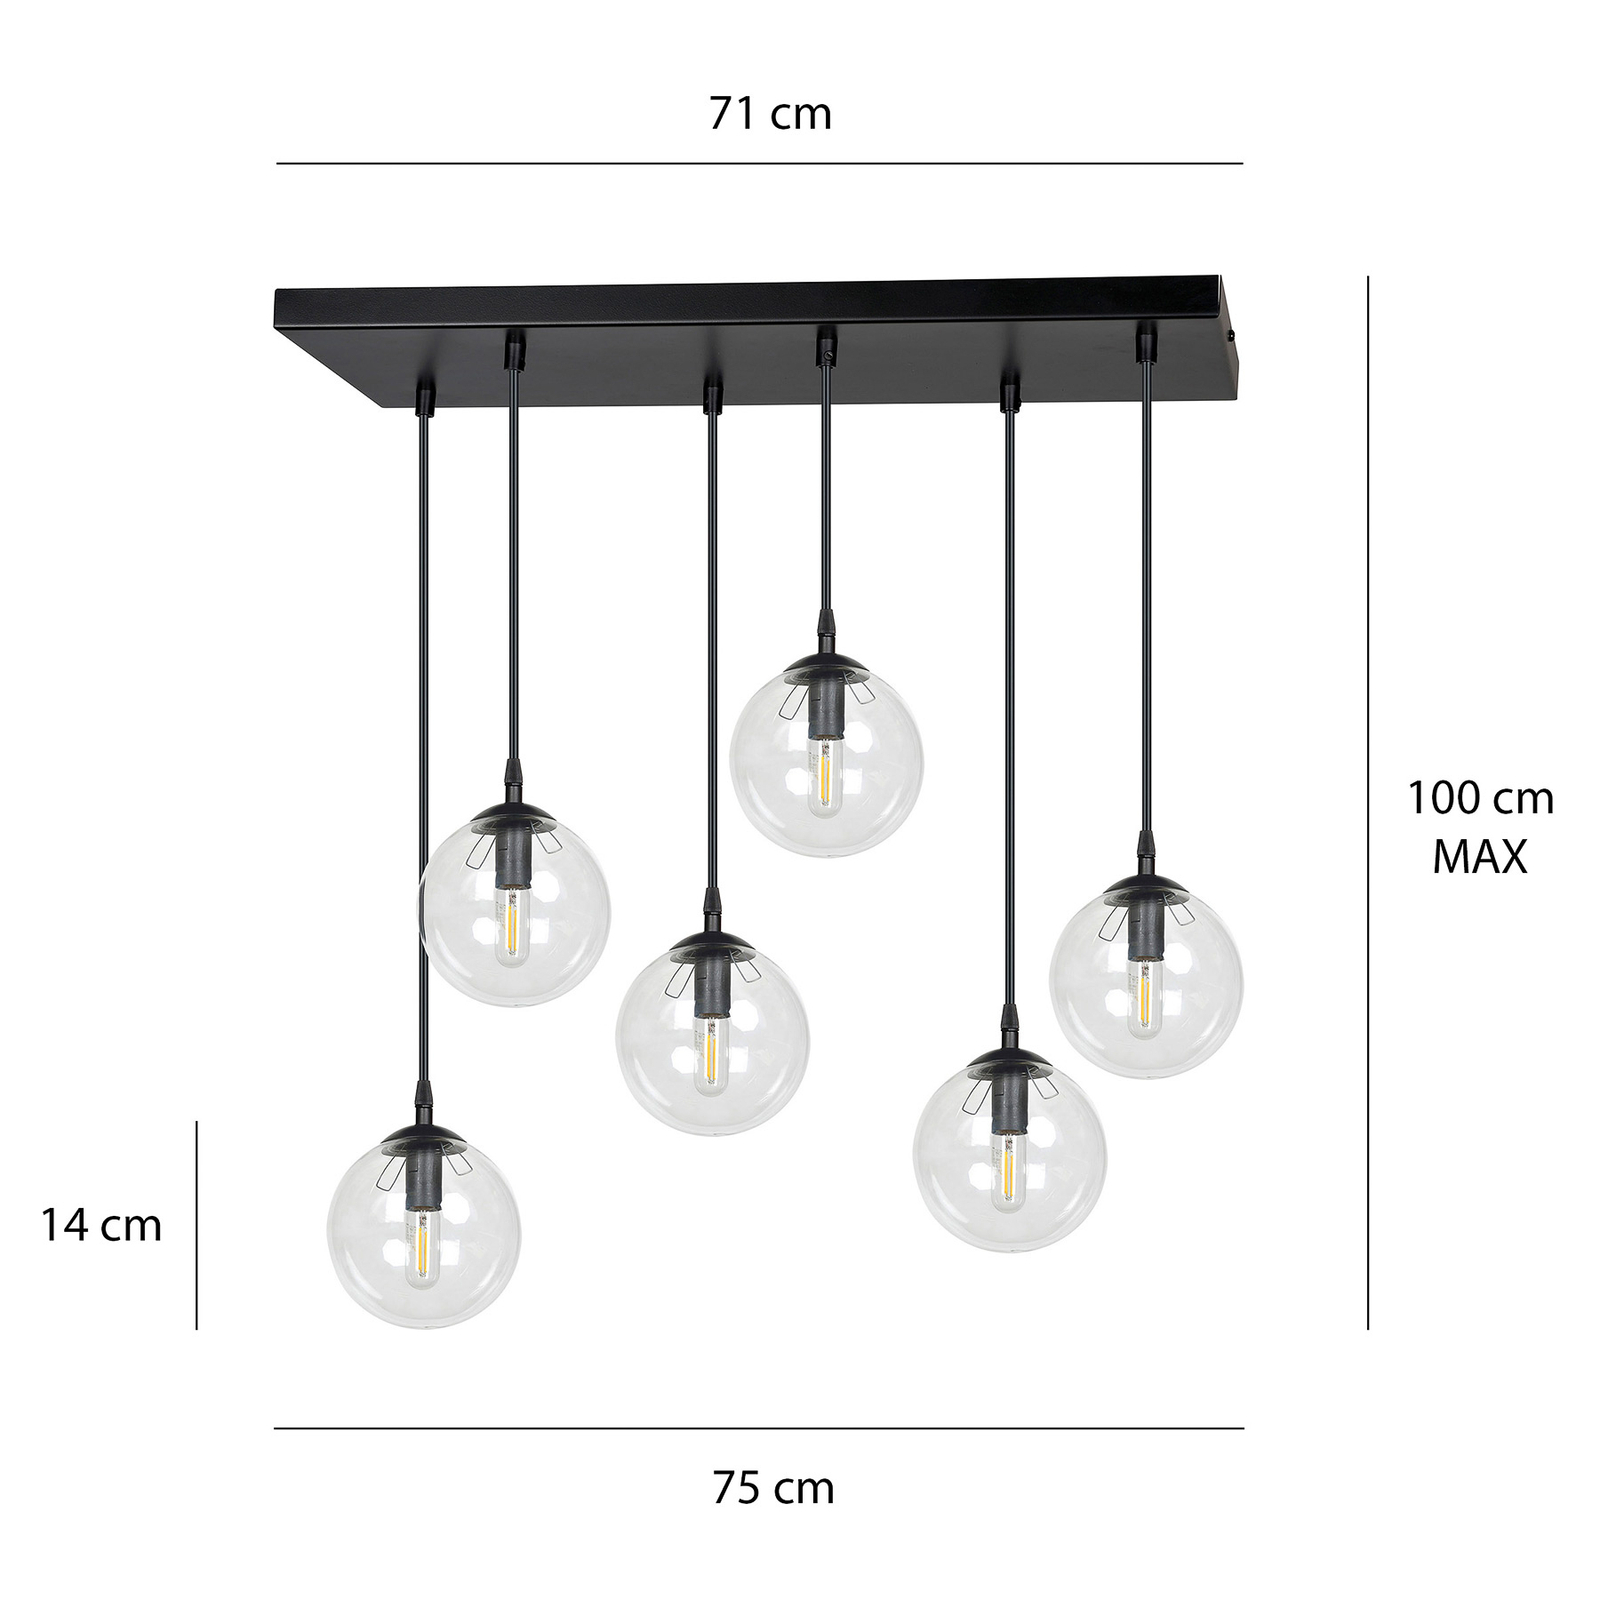 Glasachtige hanglamp 6-lamps recht helder glas